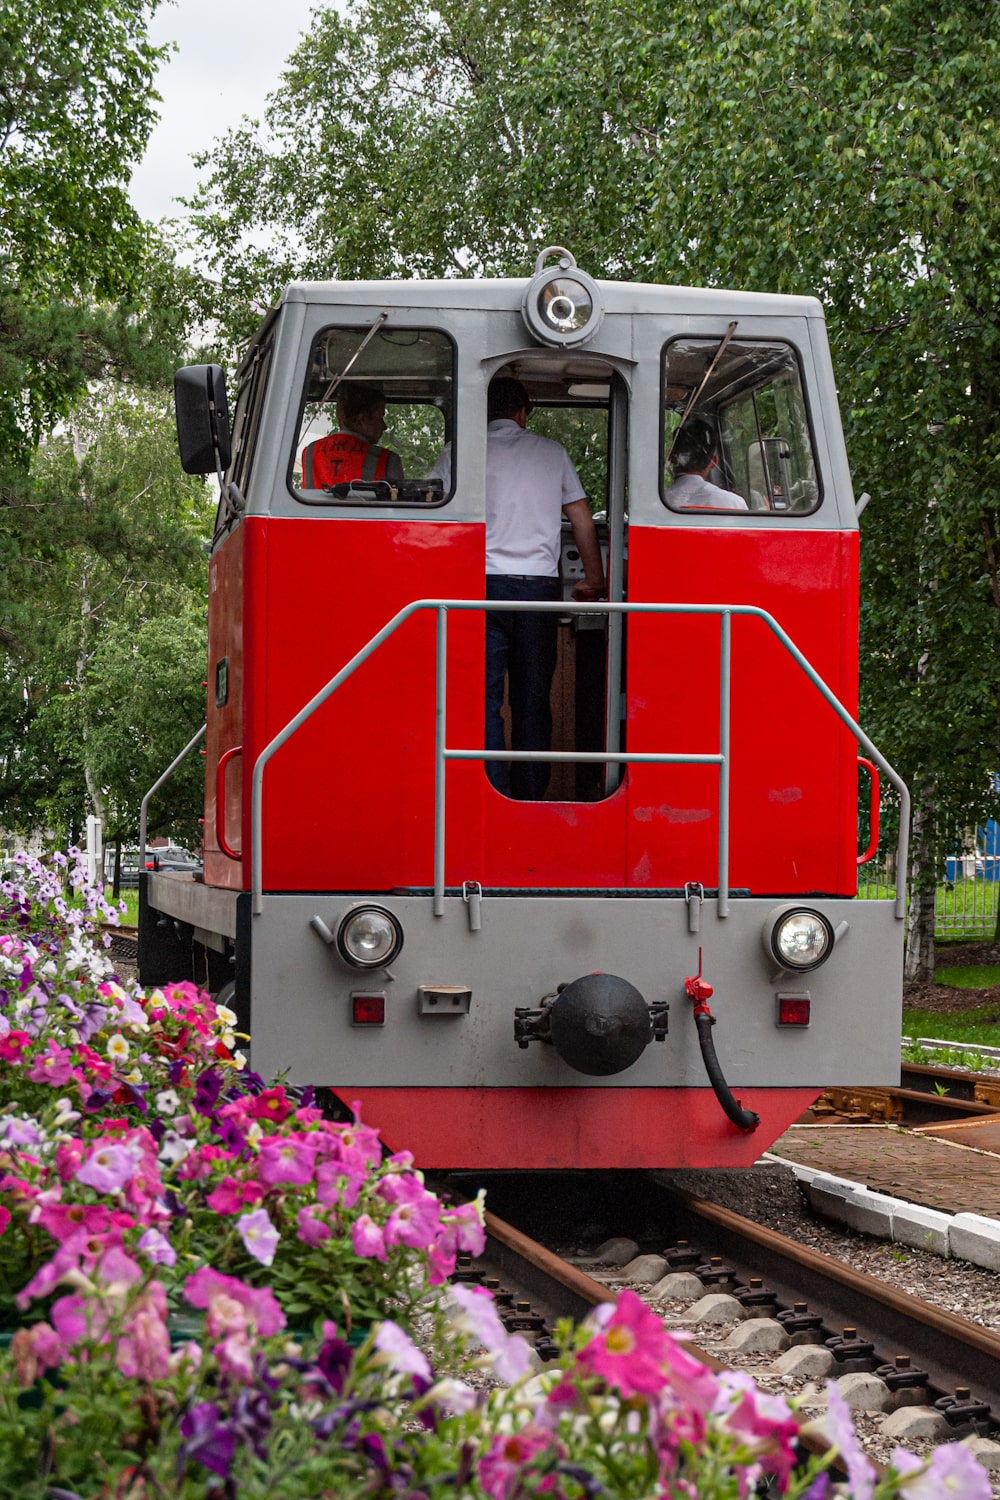 ТУ7А-3361; Фотозарисовки (Дальневосточная железная дорога)